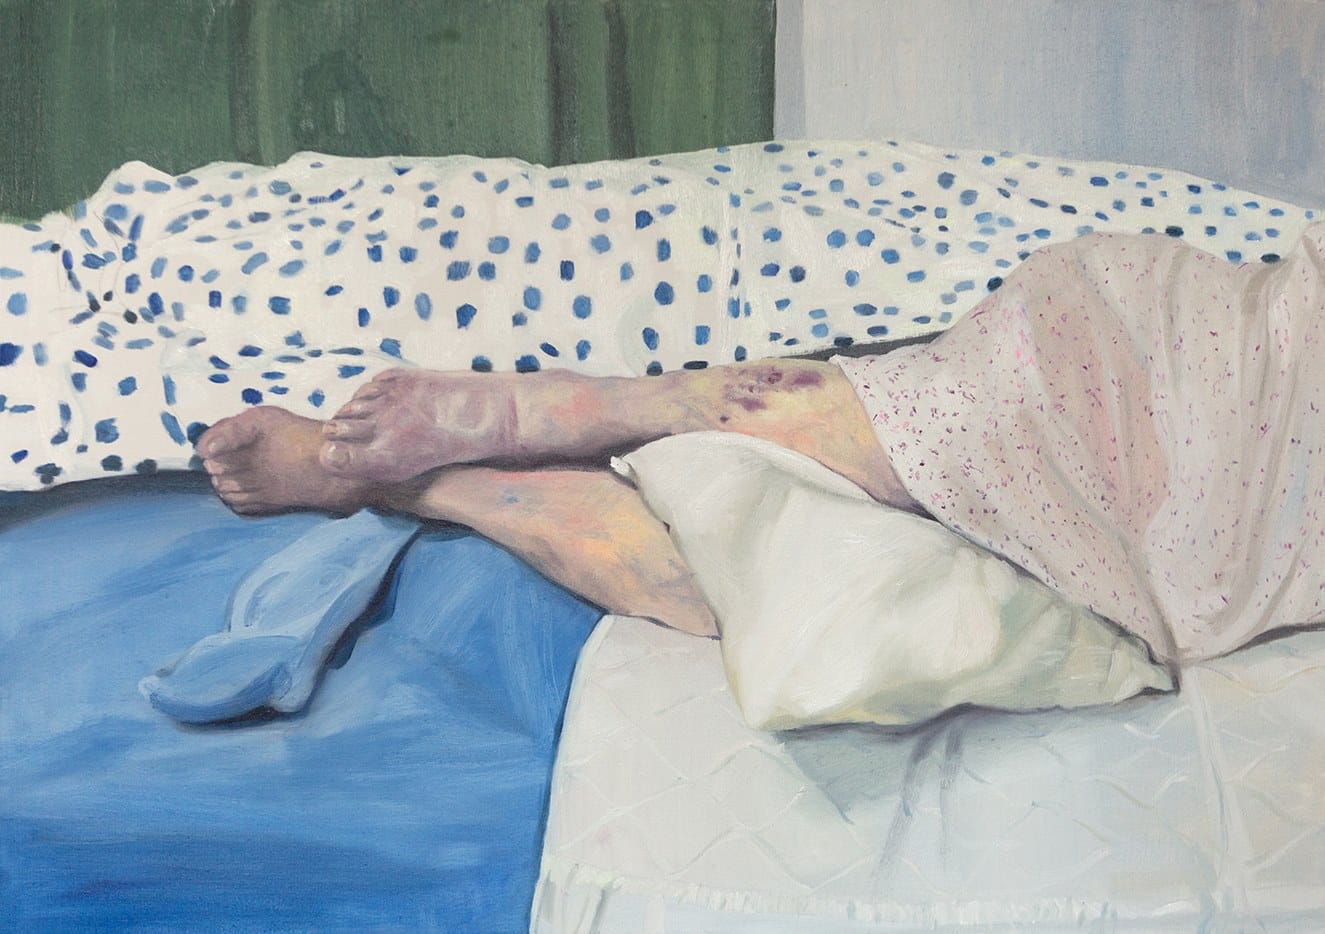 Jambes de personne âgée allongée sur un lit, jambes marquées de bleus